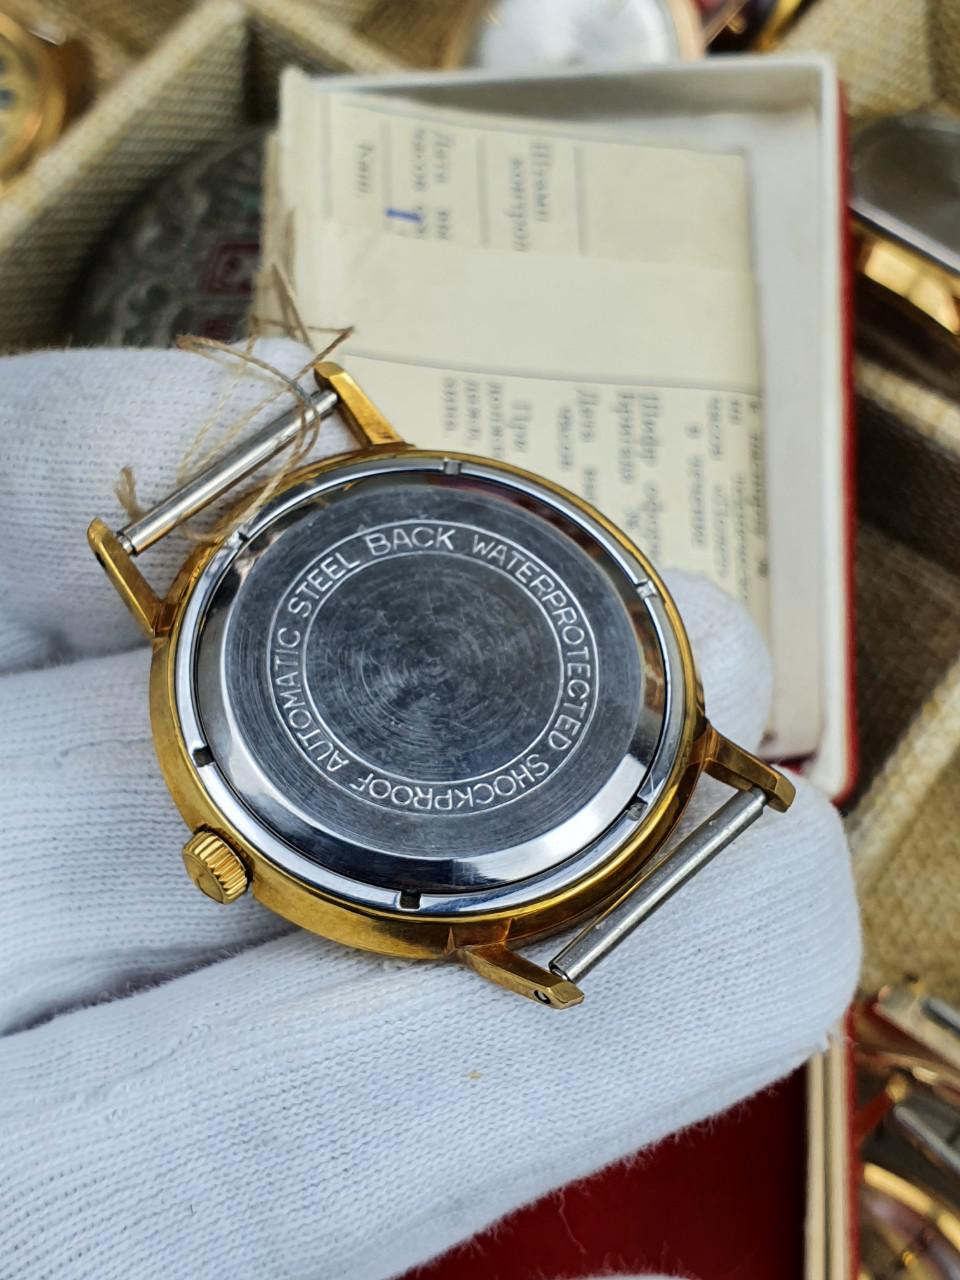 Bán đồng hồ Poljot cũ Nos nguyên sổ hộp - Tìm Hiểu Về Lịch Sử, Thiết Kế, Tính Năng Và Giá Thành